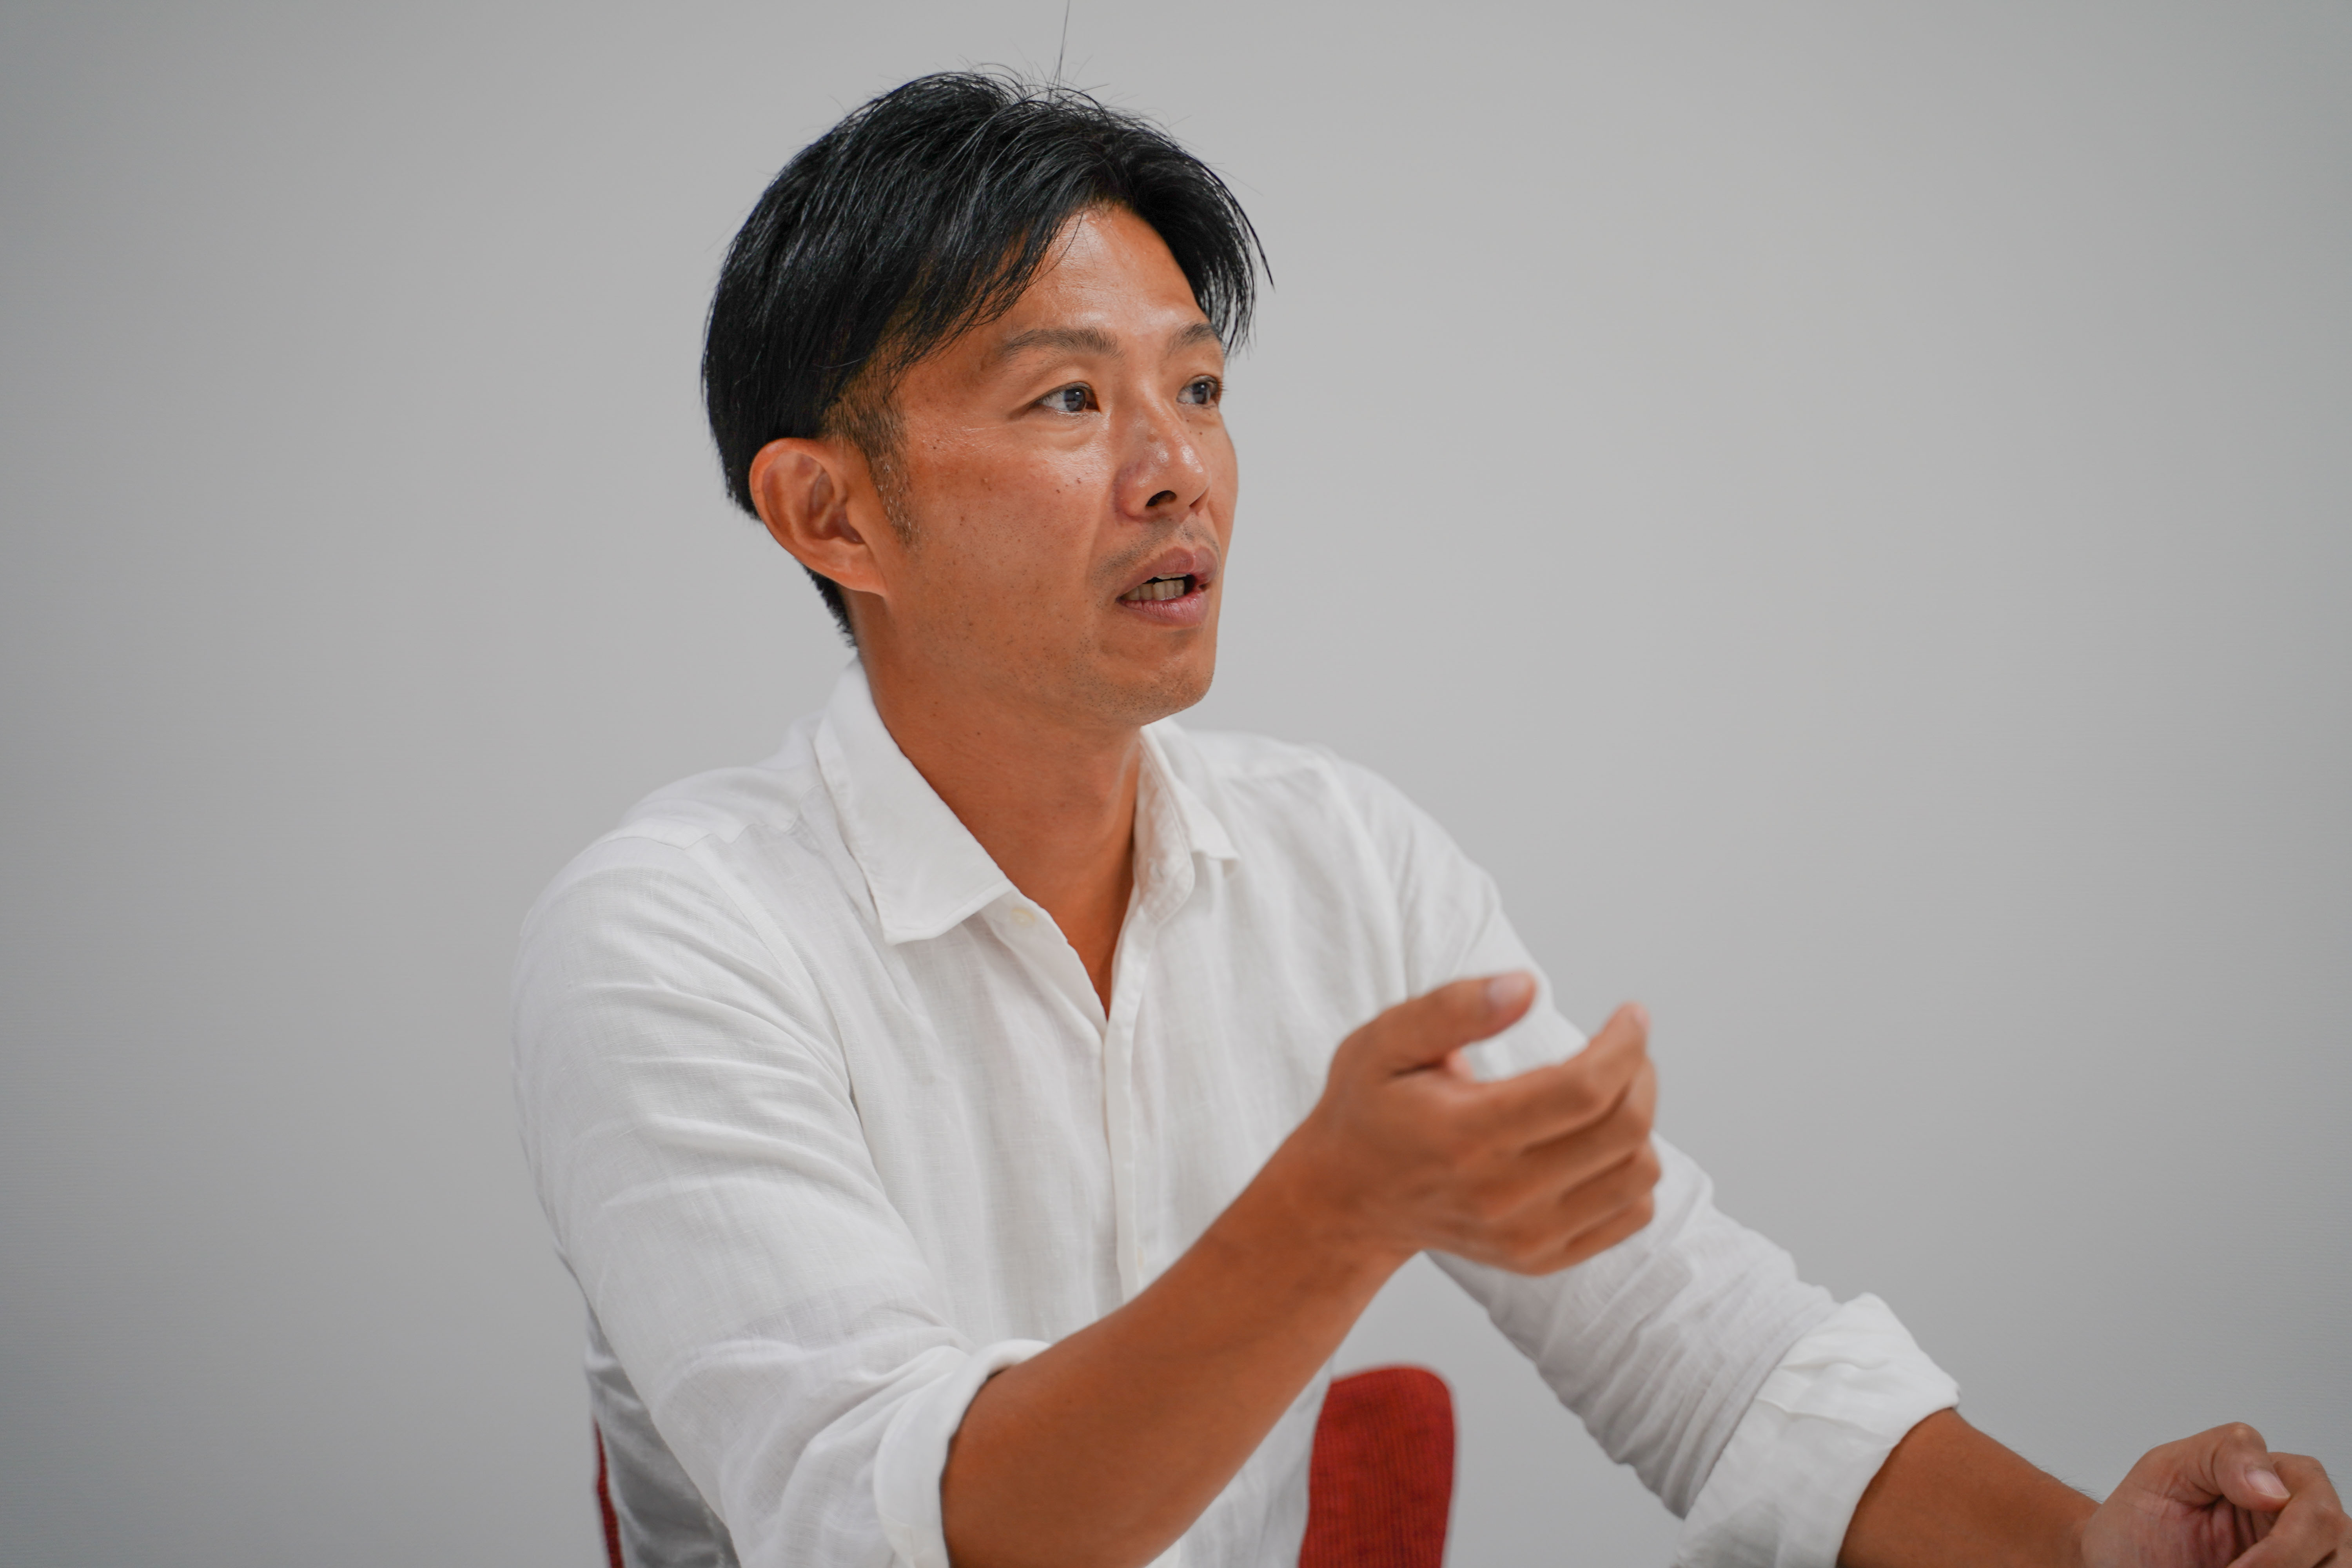 代表取締役社長の今村愼太郎は、
人々がより気軽に専門家に相談ができる世の中を作りたいという思いから現在の新規事業を起こしました。